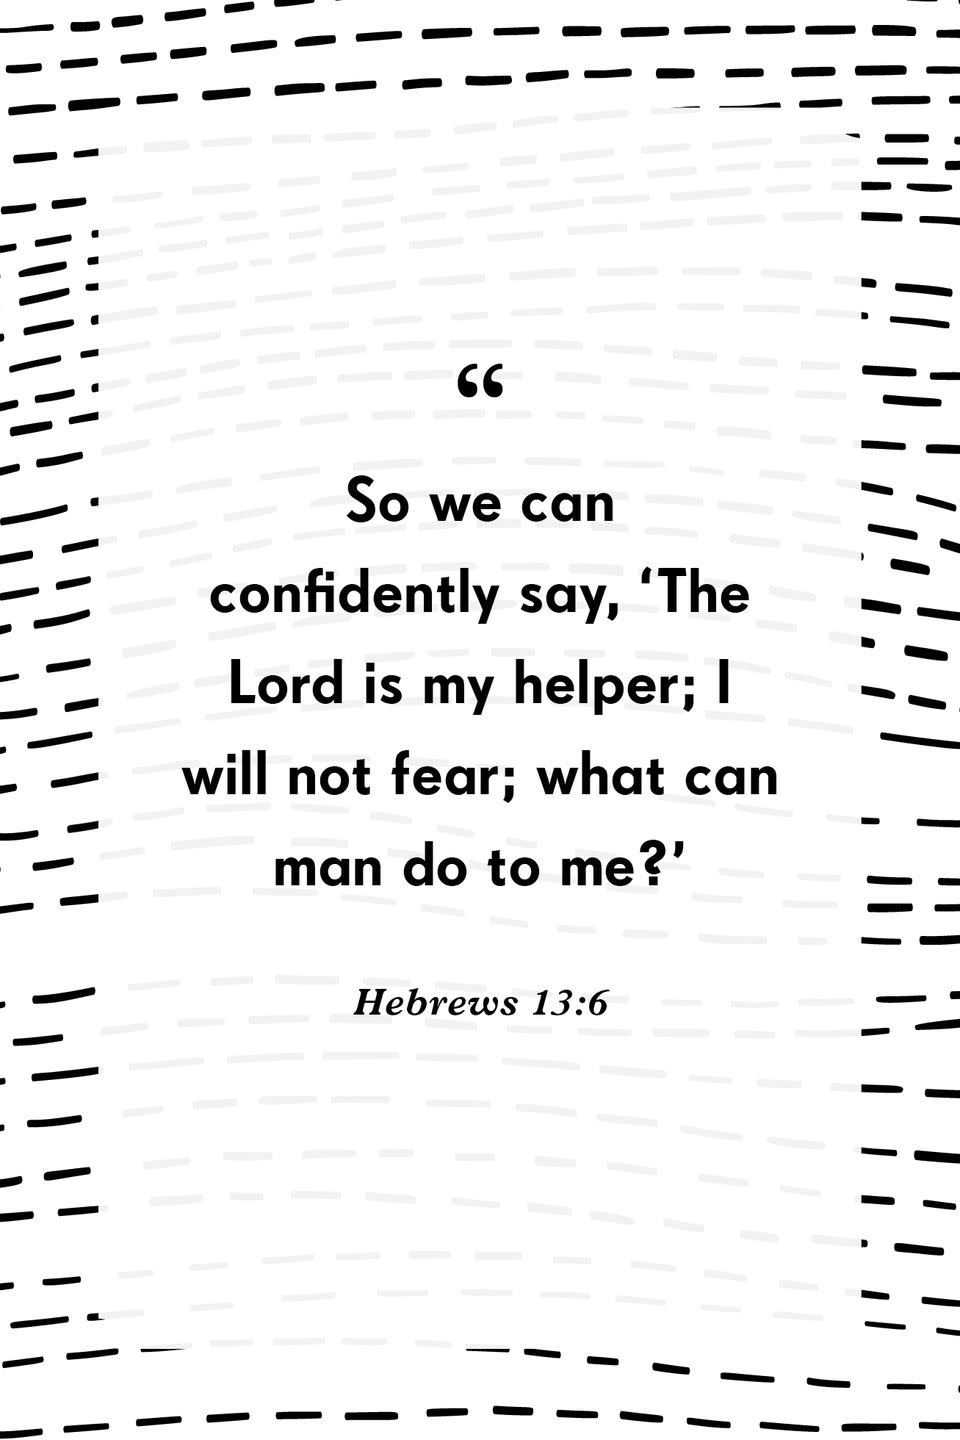 29) Hebrews 13:6